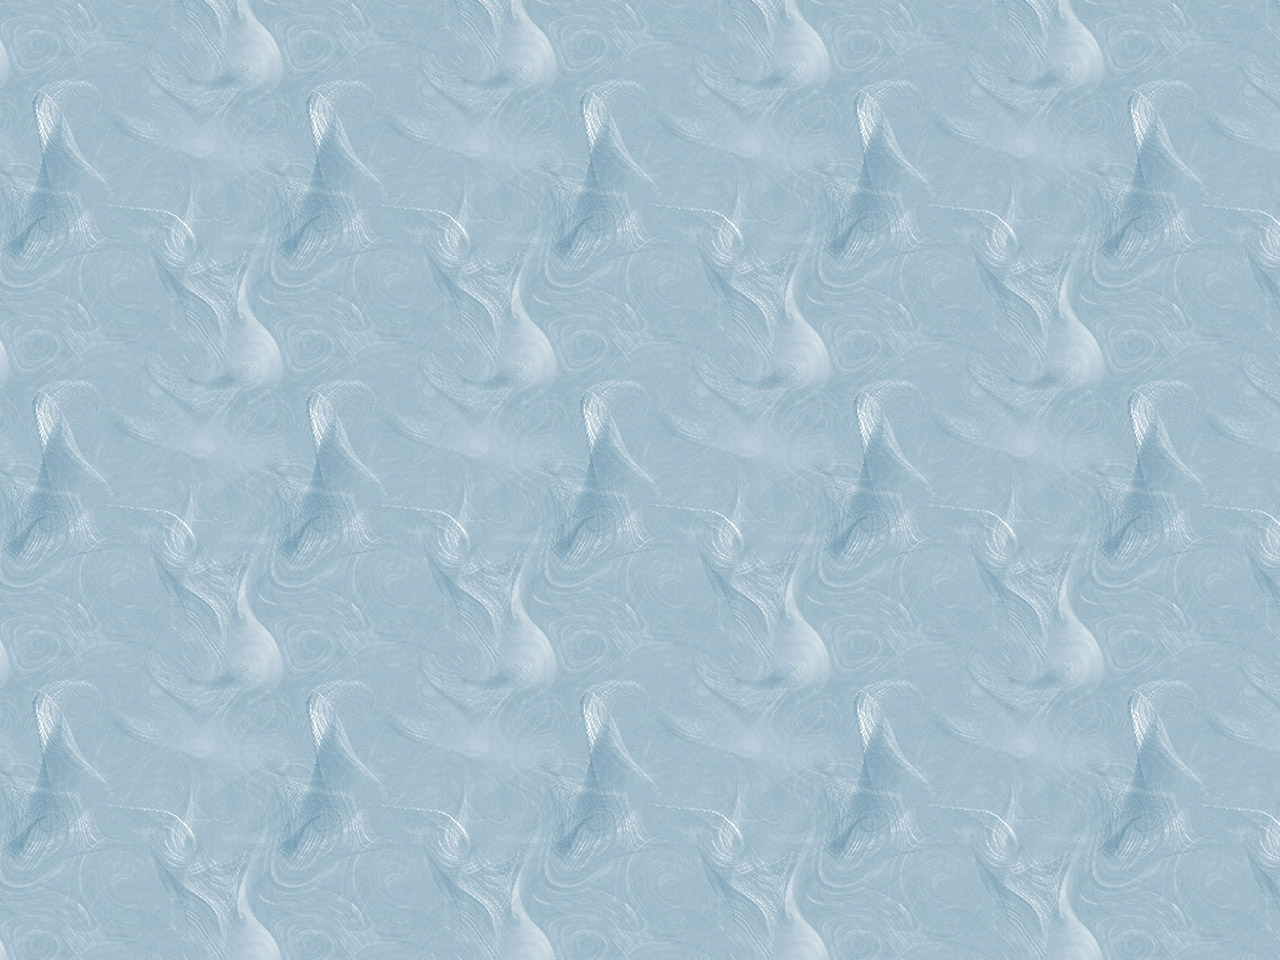 A blue swirl pattern